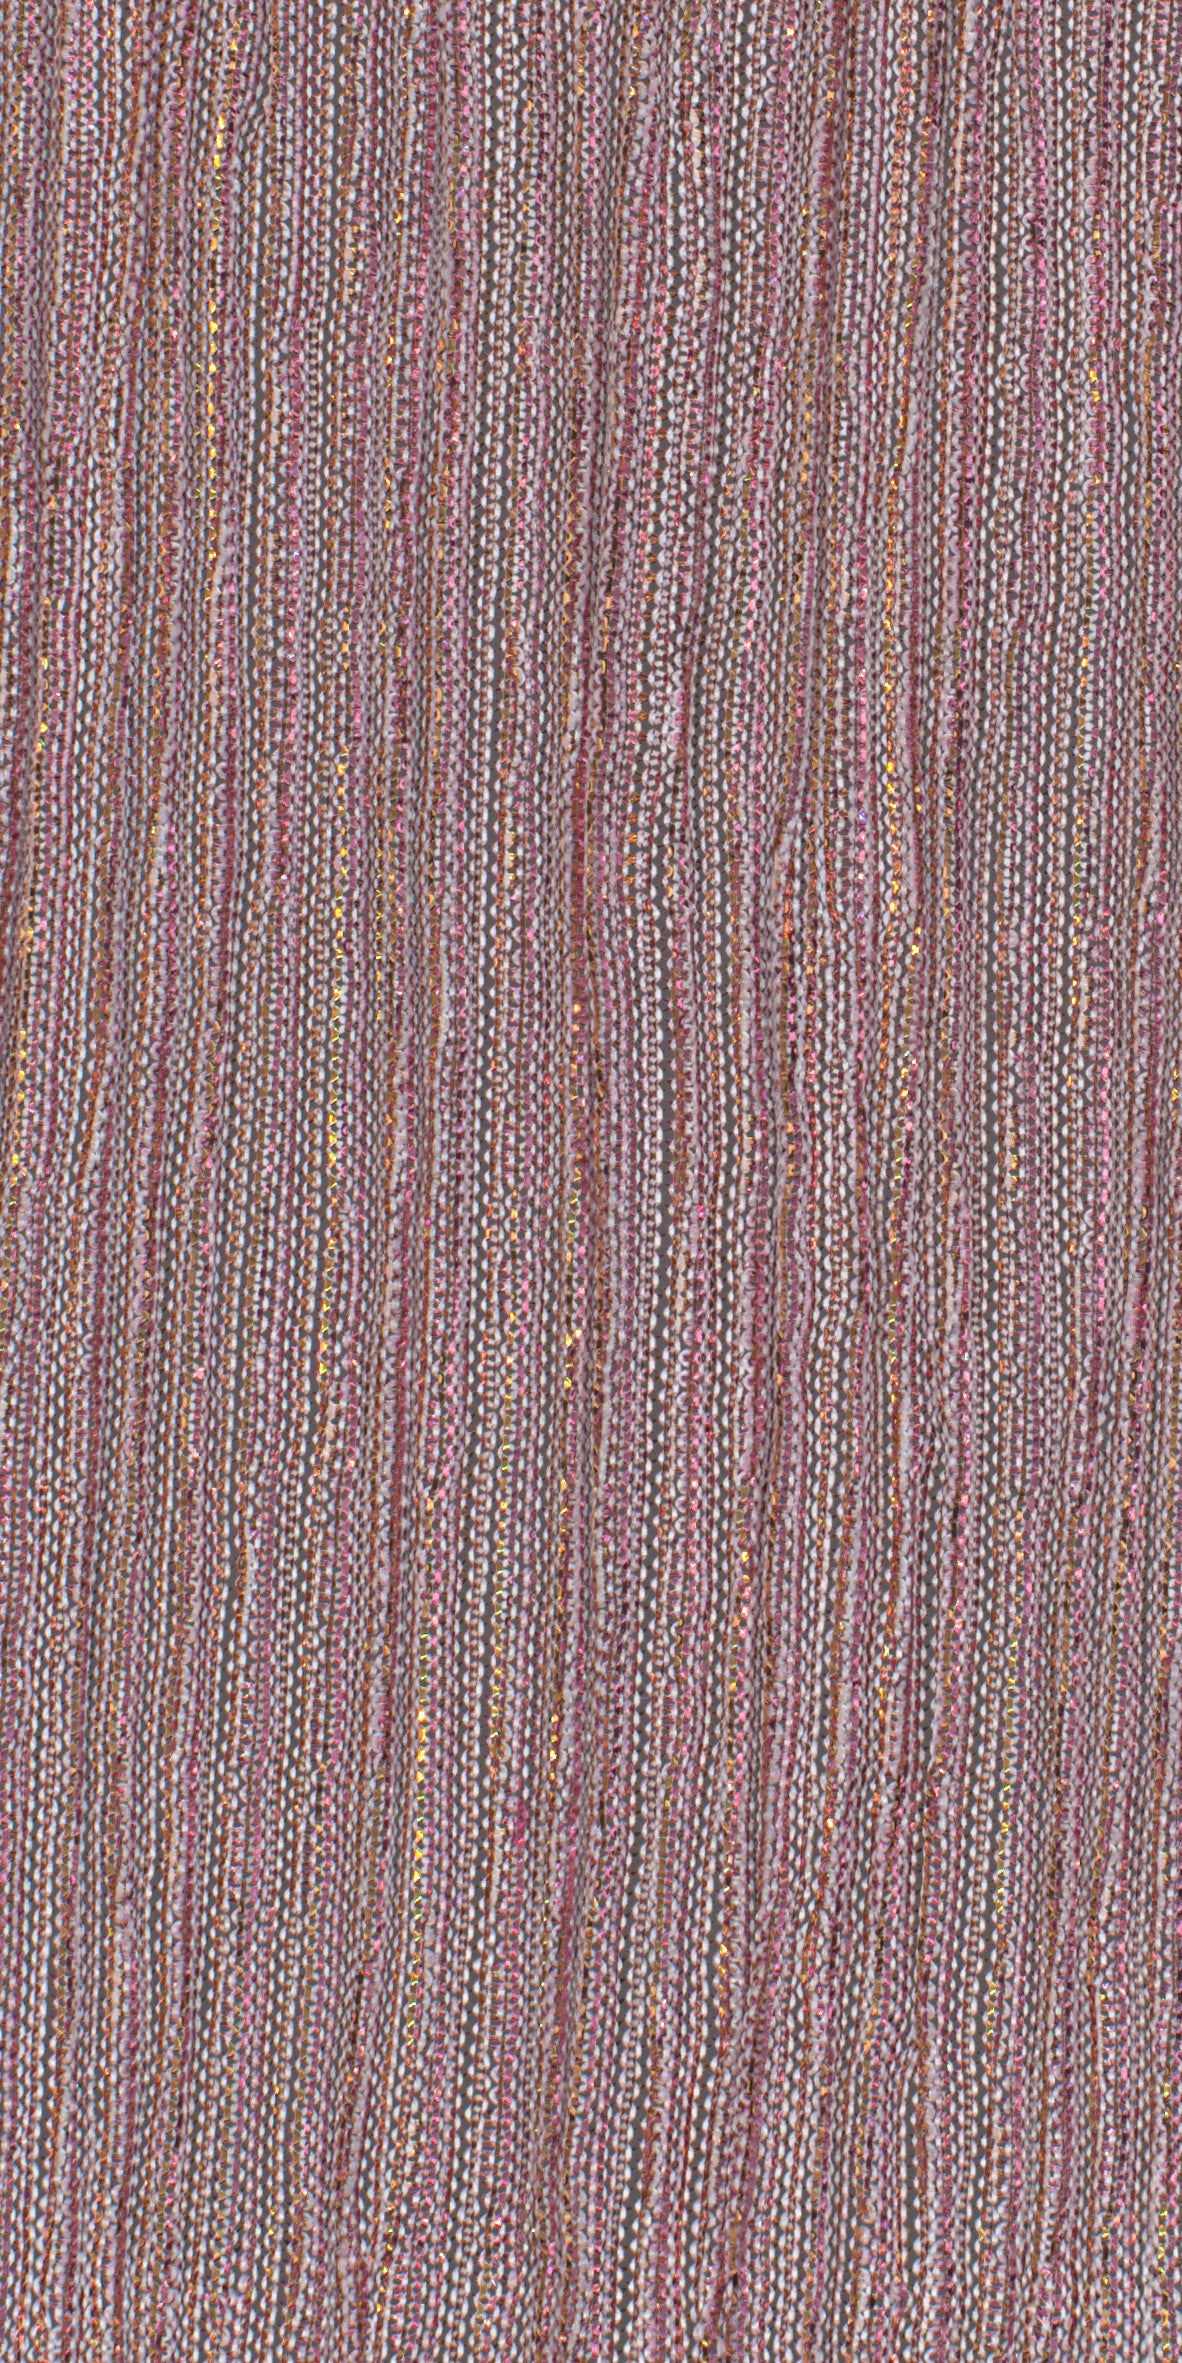 12006-12 Pink Gold Metallic Pleat Plain Dyed Blend 126g/yd 56" blend gold knit metallic pink plain dyed pleat ppl new Metallic, Pleat - knit fabric - woven fabric - fabric company - fabric wholesale - fabric b2b - fabric factory - high quality fabric - hong kong fabric - fabric hk - acetate fabric - cotton fabric - linen fabric - metallic fabric - nylon fabric - polyester fabric - spandex fabric - chun wing hing - cwh hk - fabric worldwide ship - 針織布 - 梳織布 - 布料公司- 布料批發 - 香港布料 - 秦榮興